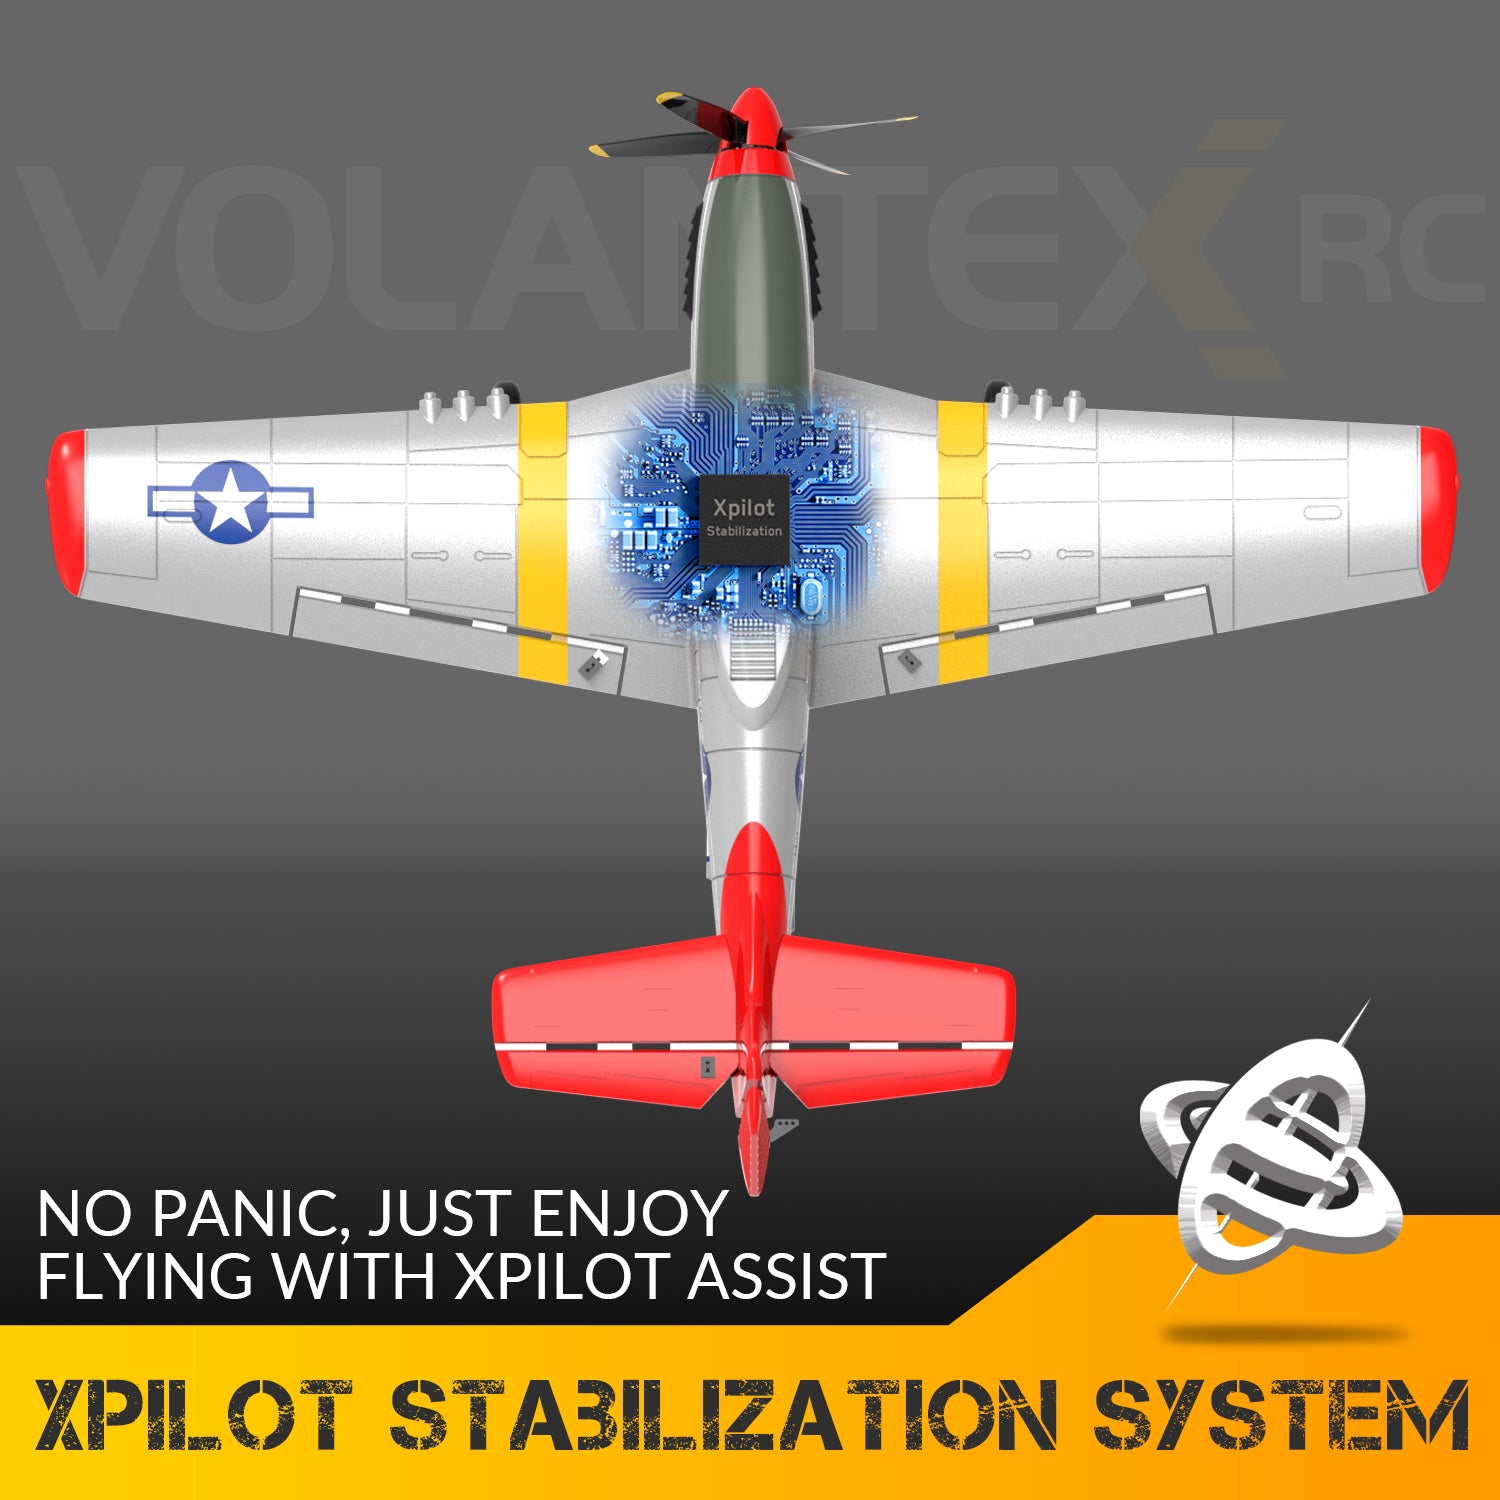 VOLANTEXRC P51D Mustang 4Ch Avions RC débutants avec stabilisateur Xpilot One-key Aerobatic (761-5) RTF